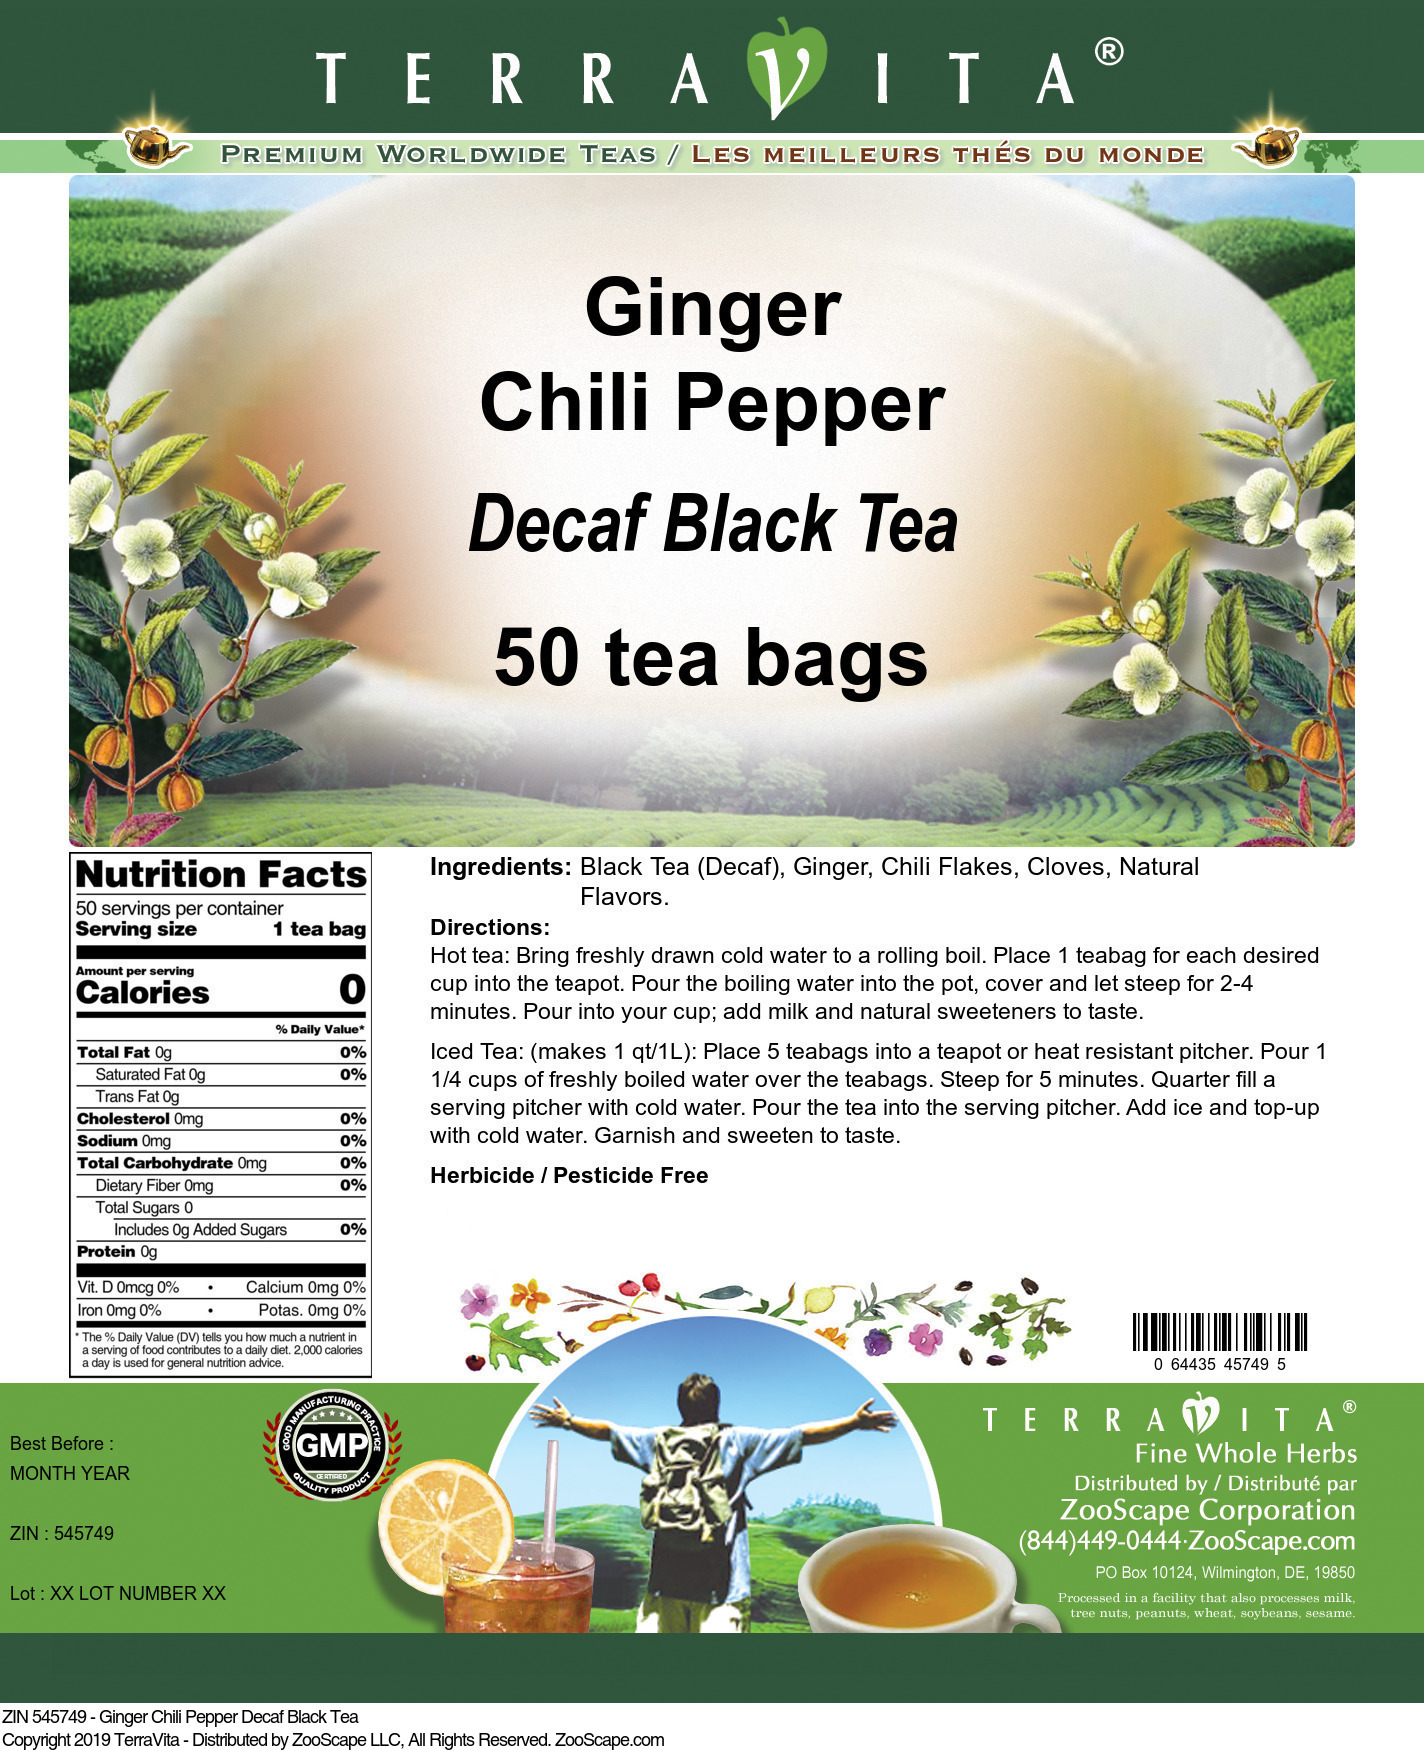 Ginger Chili Pepper Decaf Black Tea - Label